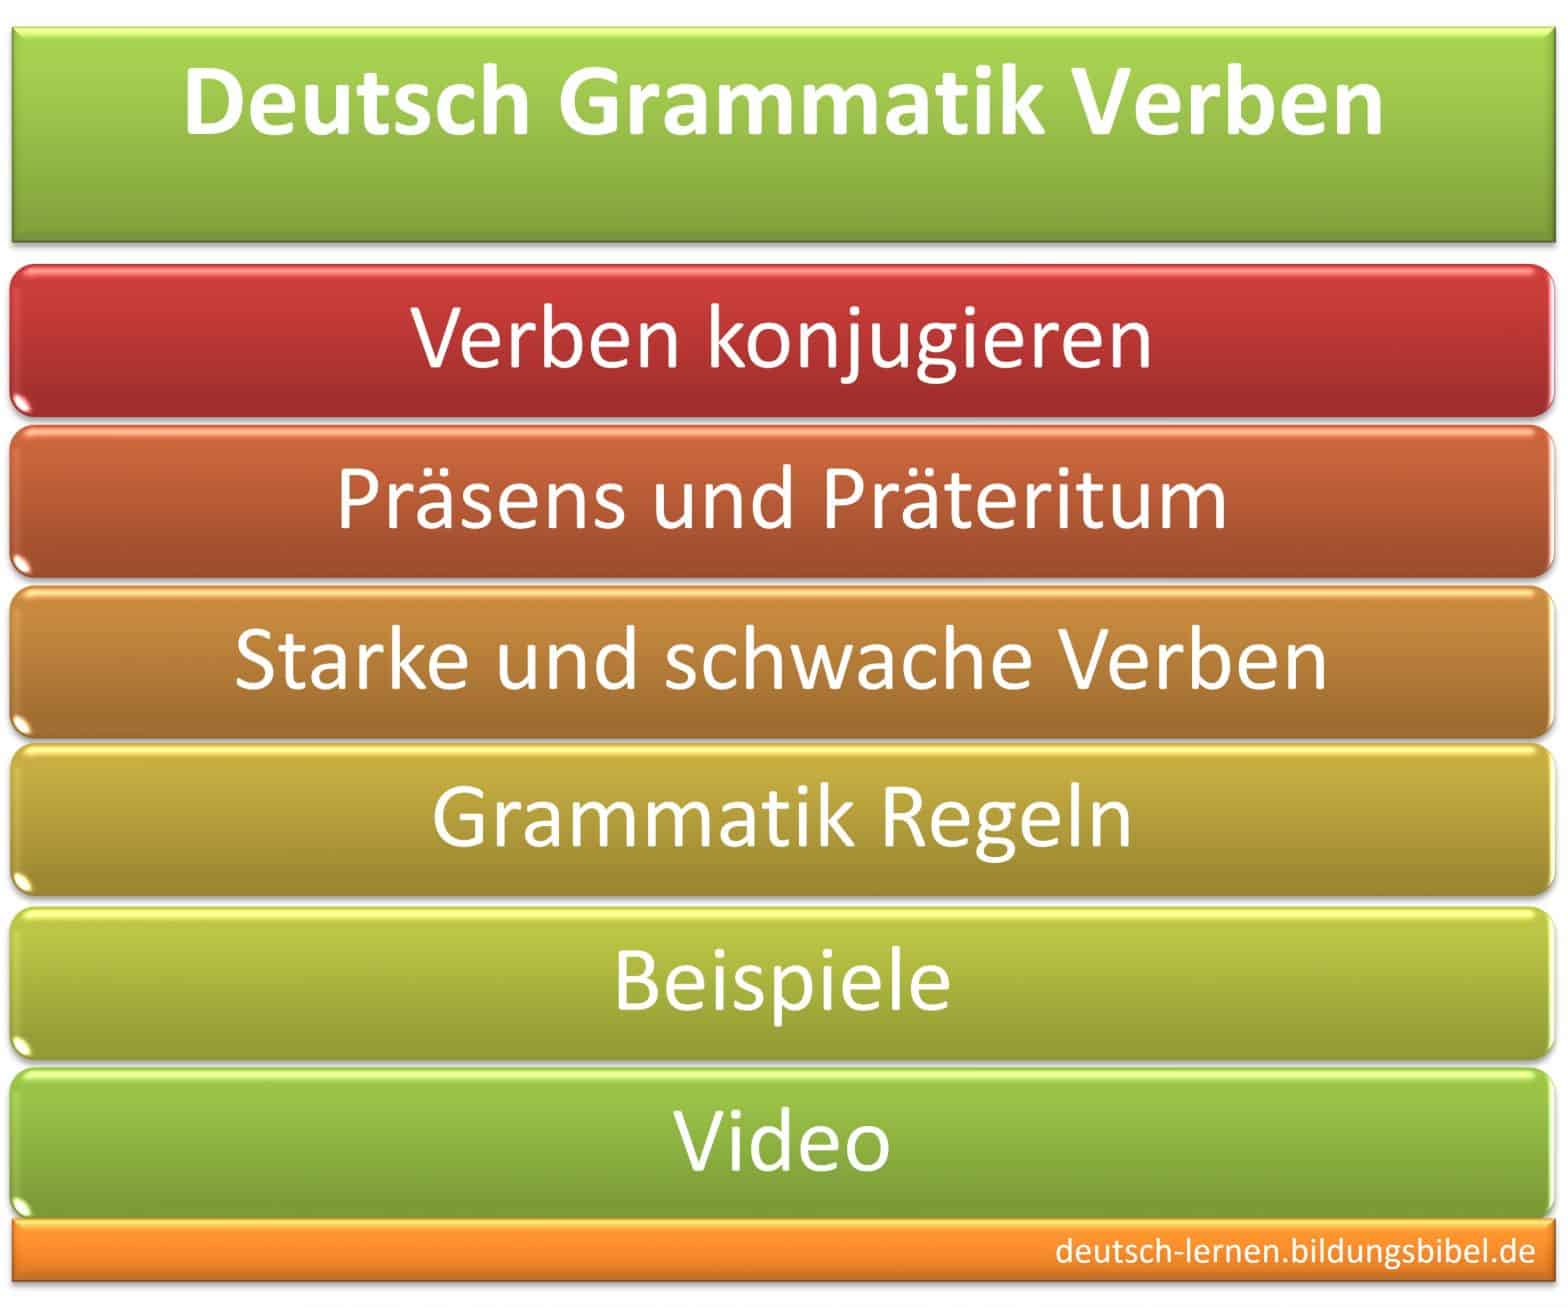 Verben konjugieren, Regeln, Beispiele, Deutsch Grammatik, Video, Konjugation im Präsens und Präteritum, starke und schwache Verben.